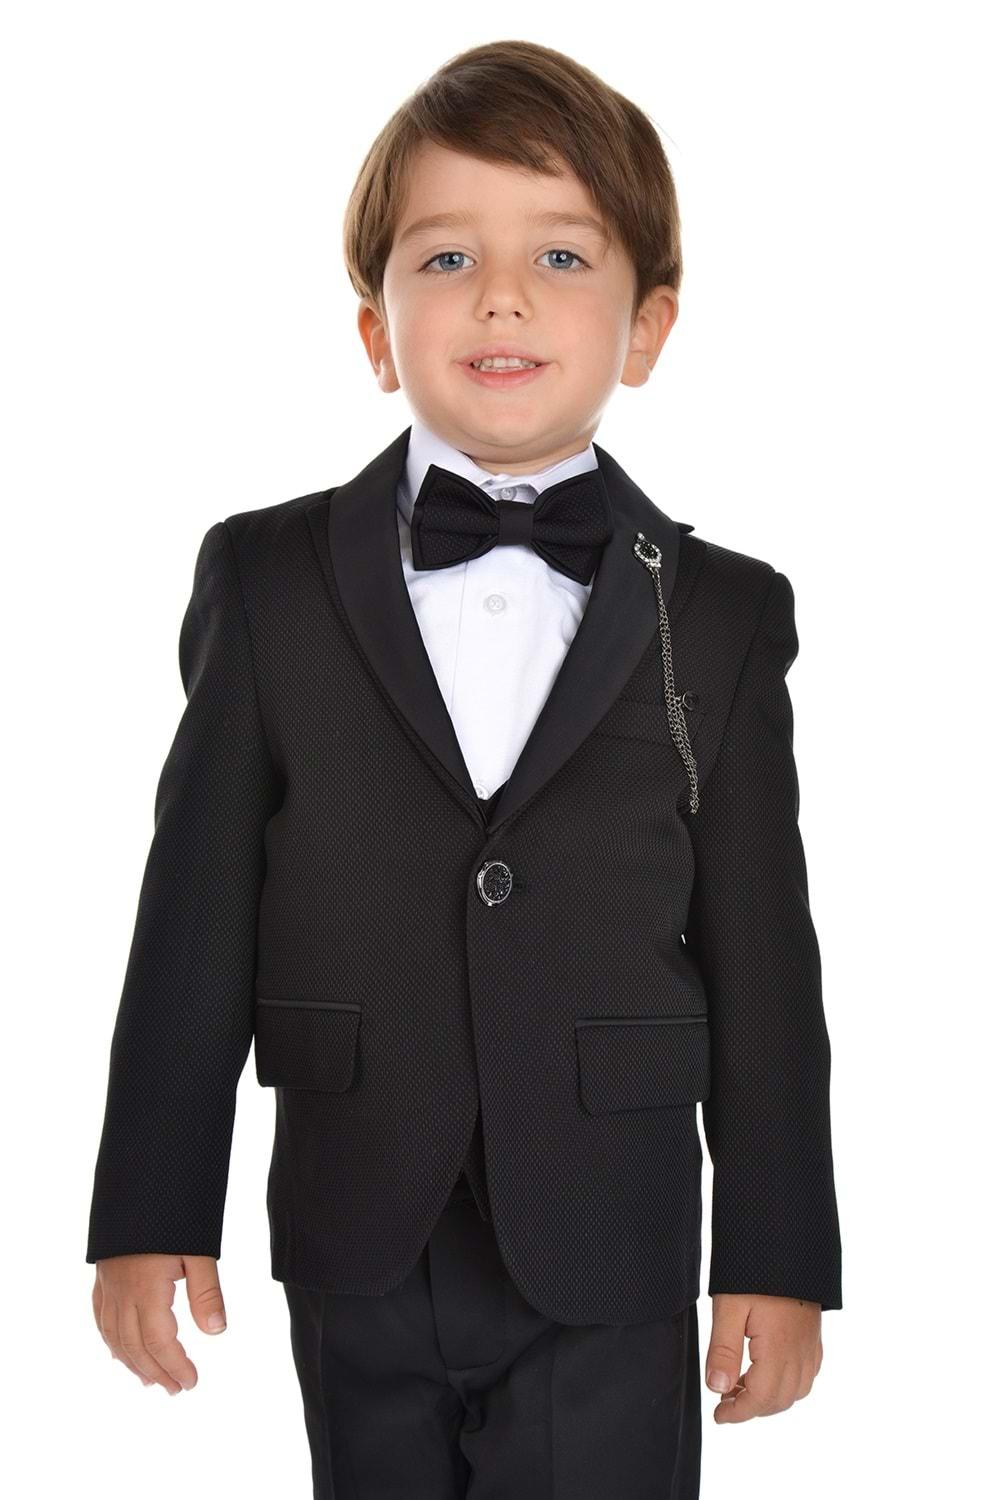 Ceketli Yelekli Erkek Çocuk Damatlık Takım Elbise